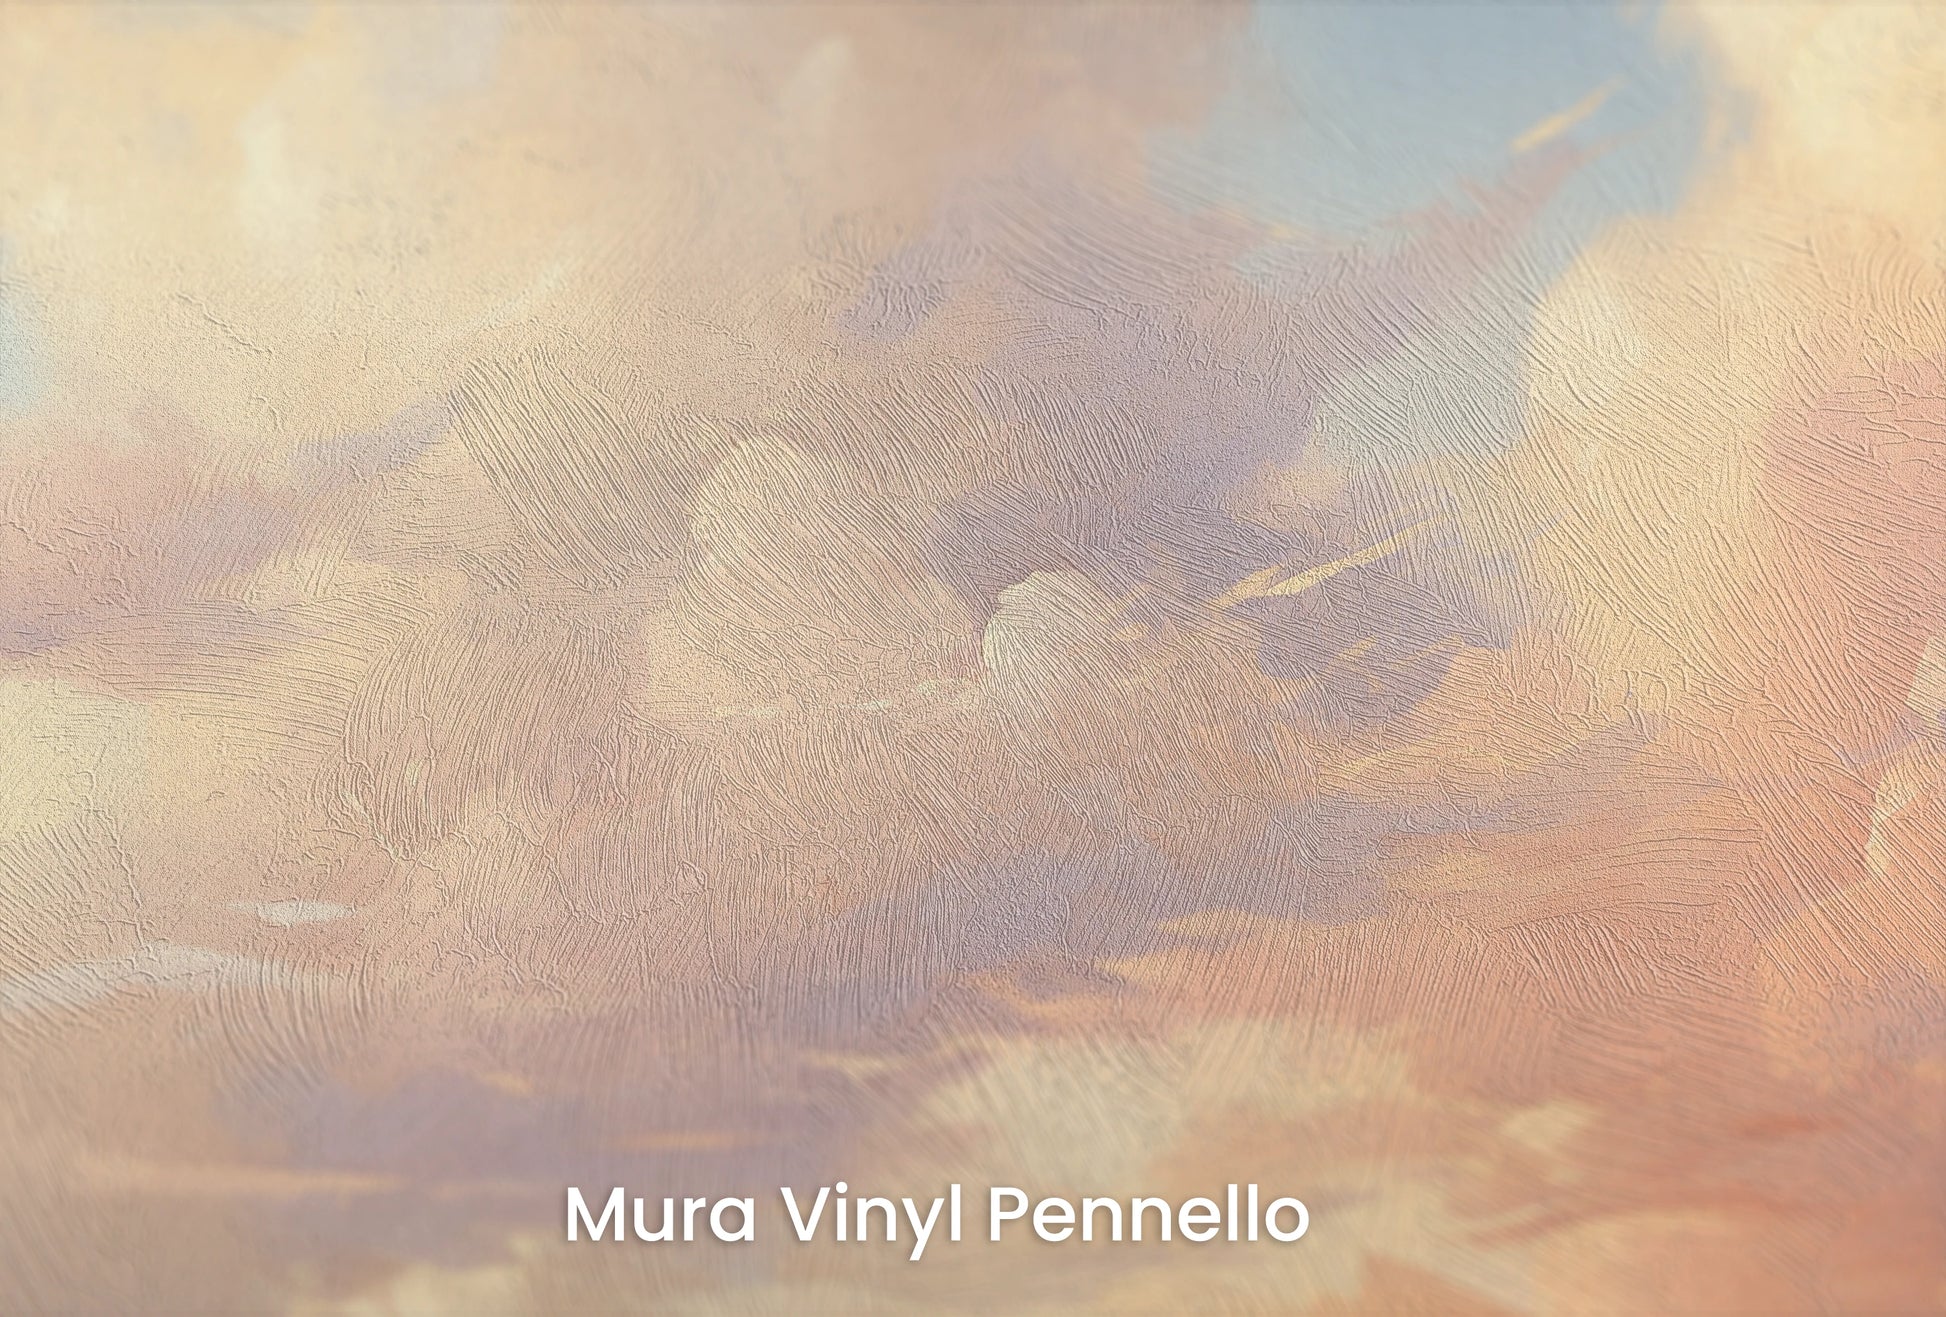 Zbliżenie na artystyczną fototapetę o nazwie Evening Glow na podłożu Mura Vinyl Pennello - faktura pociągnięć pędzla malarskiego.